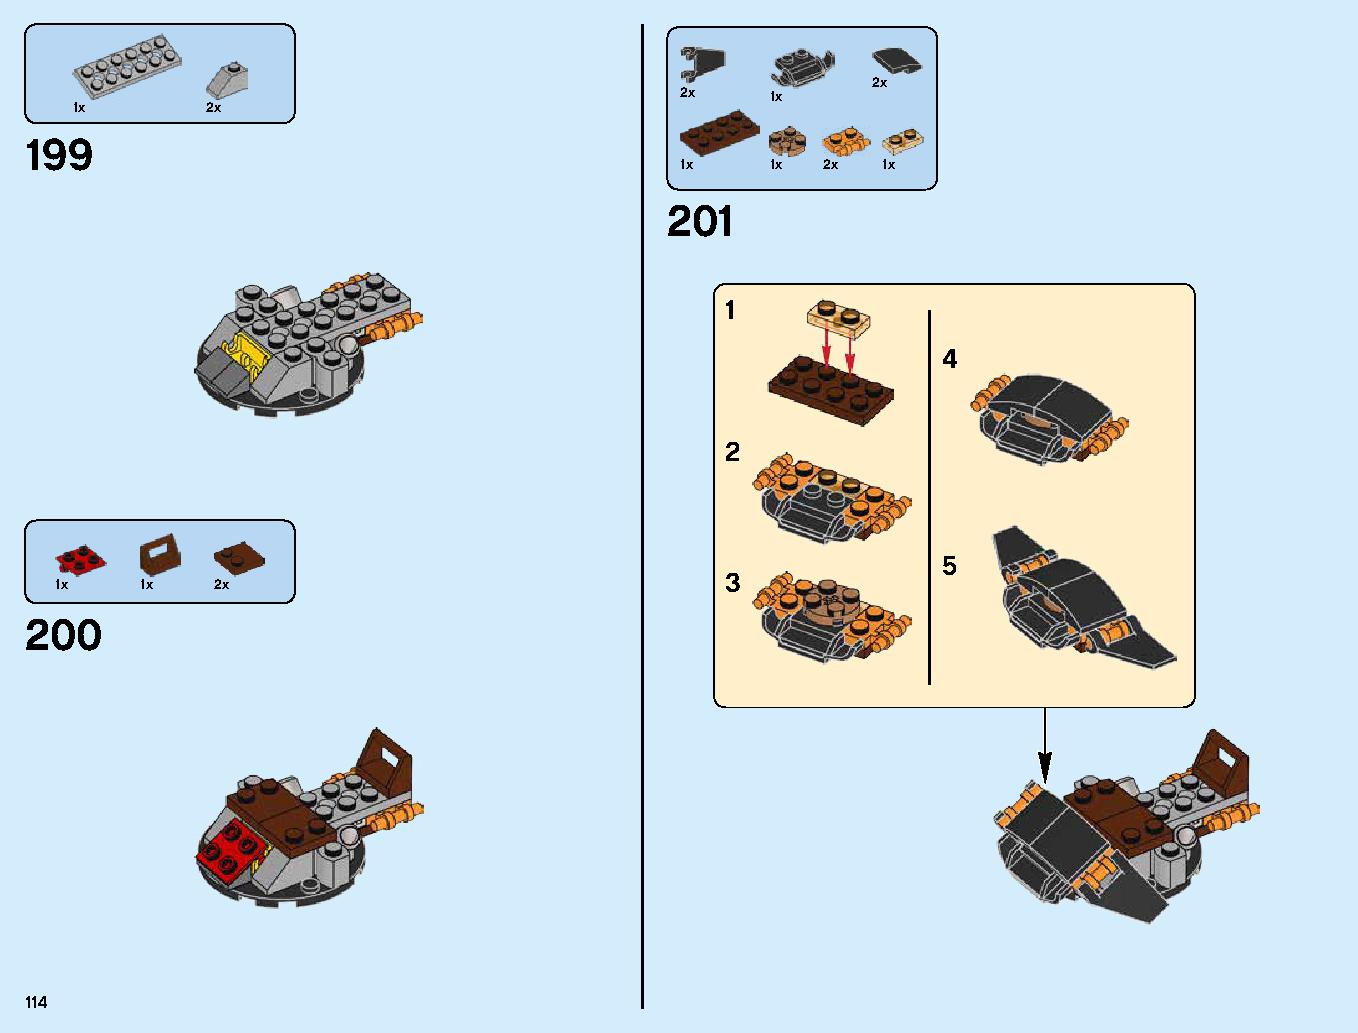 ハンティング・デスストライカー 70654 レゴの商品情報 レゴの説明書・組立方法 114 page